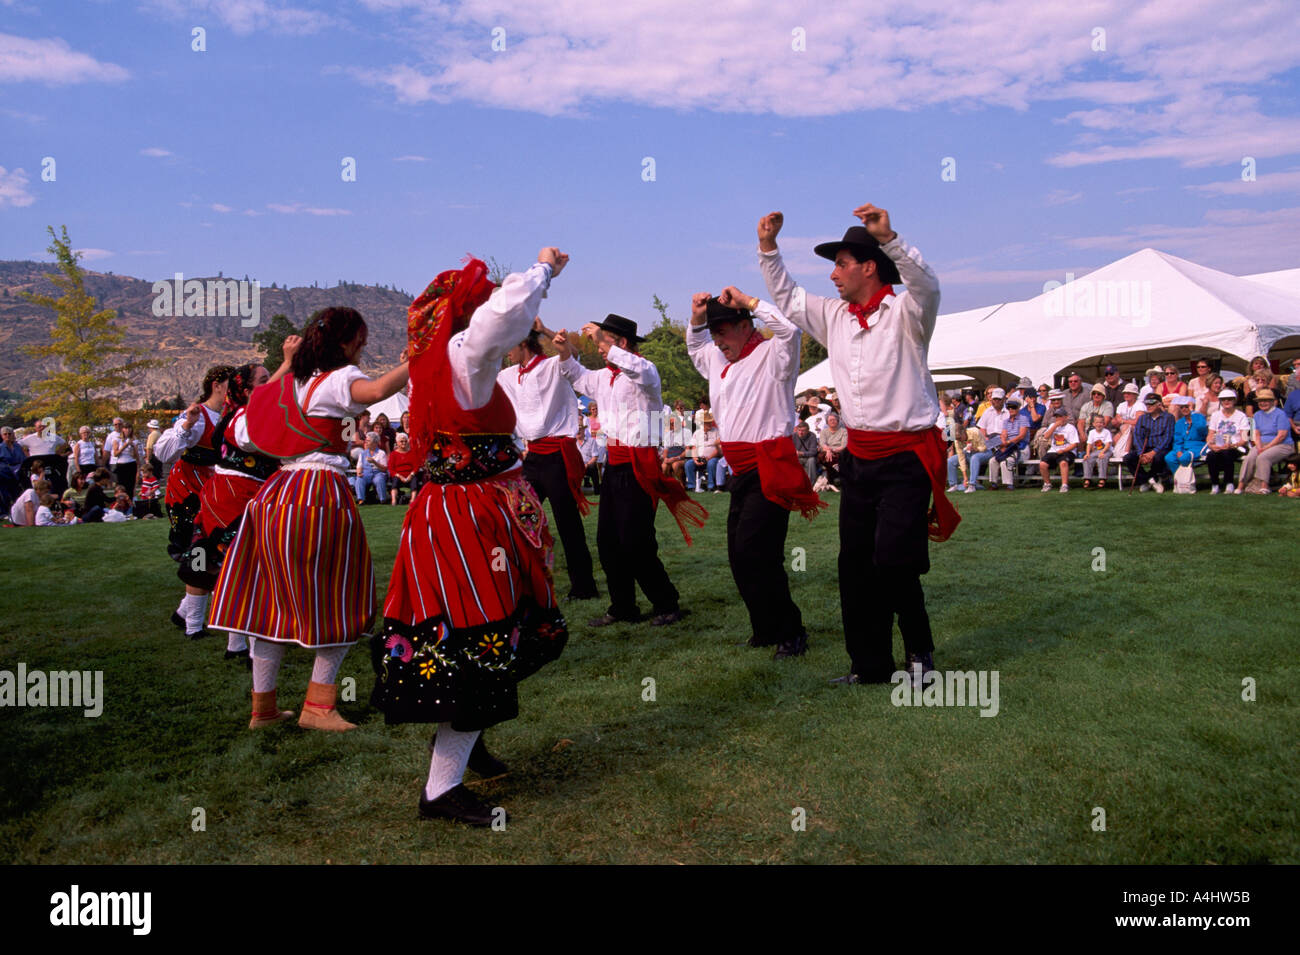 Portugiesische Volkstänzer tanzen in Tracht beim jährlichen Festival der Traube, Oliver, BC, Britisch-Kolumbien, Kanada Stockfoto